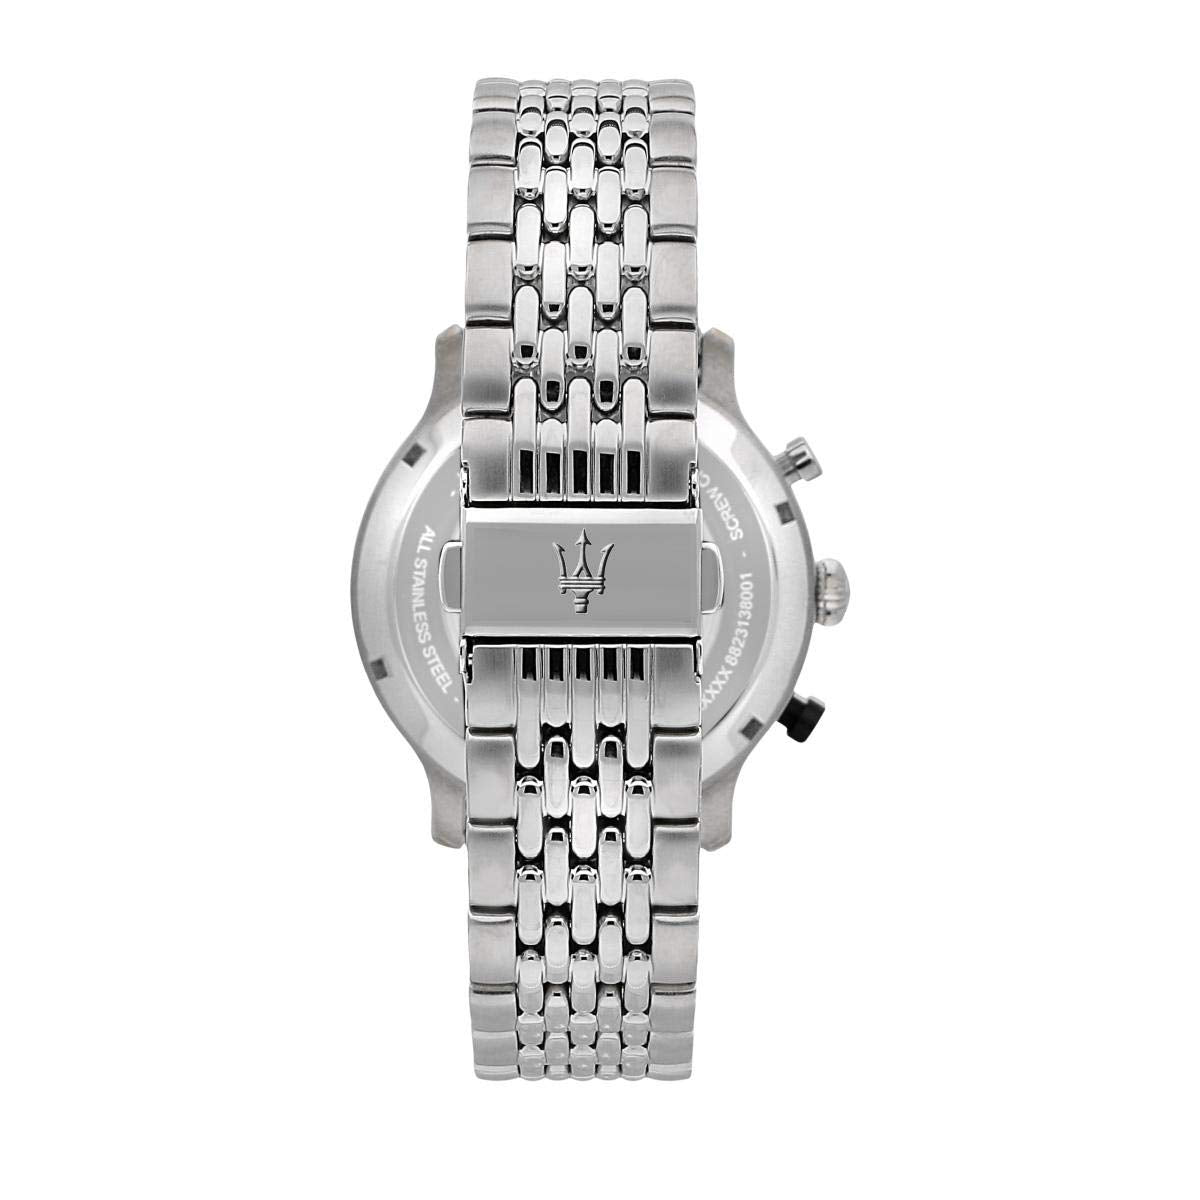 Maserati Analog Black Dial Men's Watch R8873638001